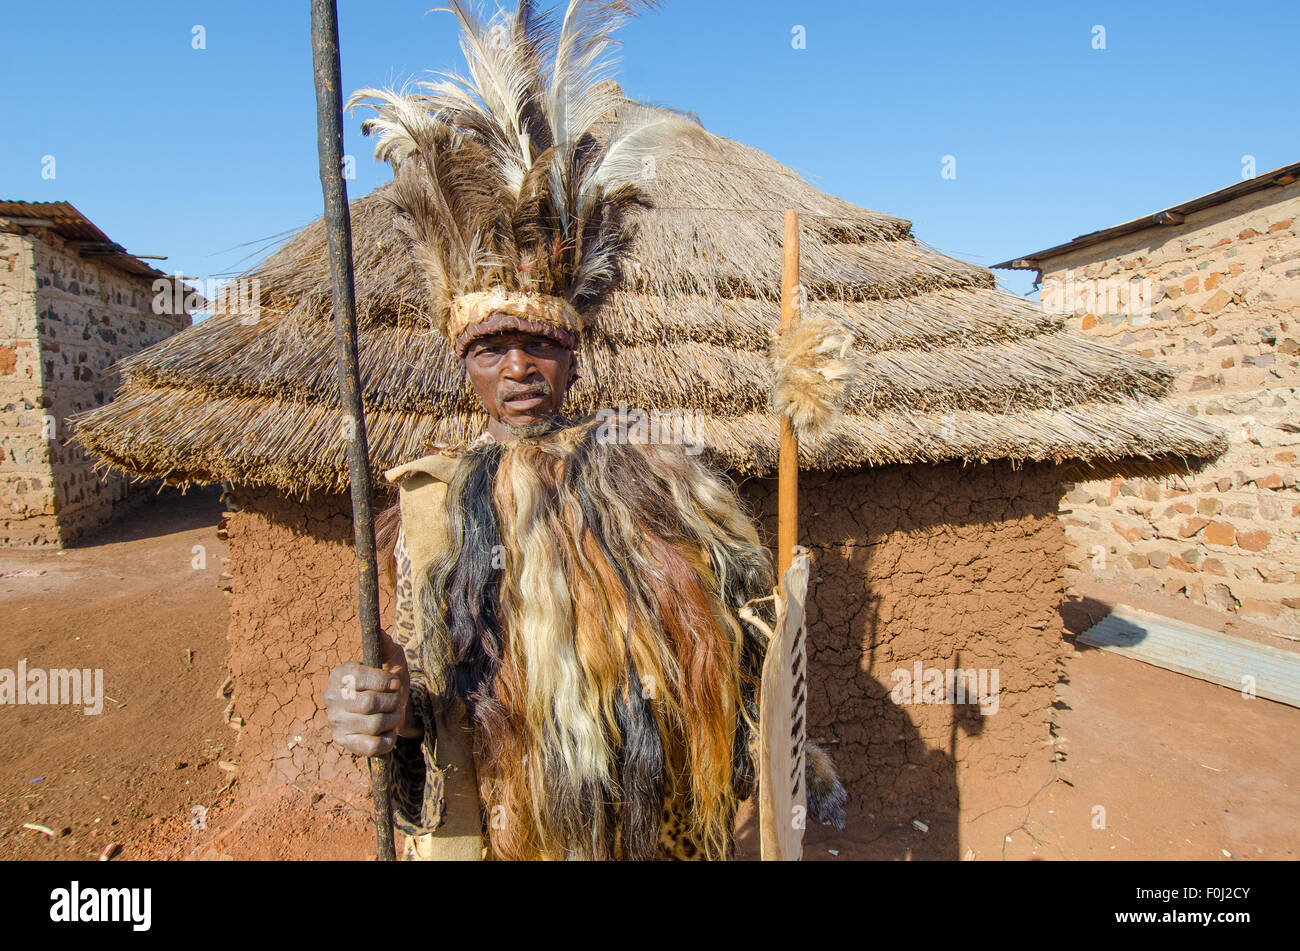 Un jefe de aldea local preside una comunidad rural en su vestimenta tradicional. Foto de stock